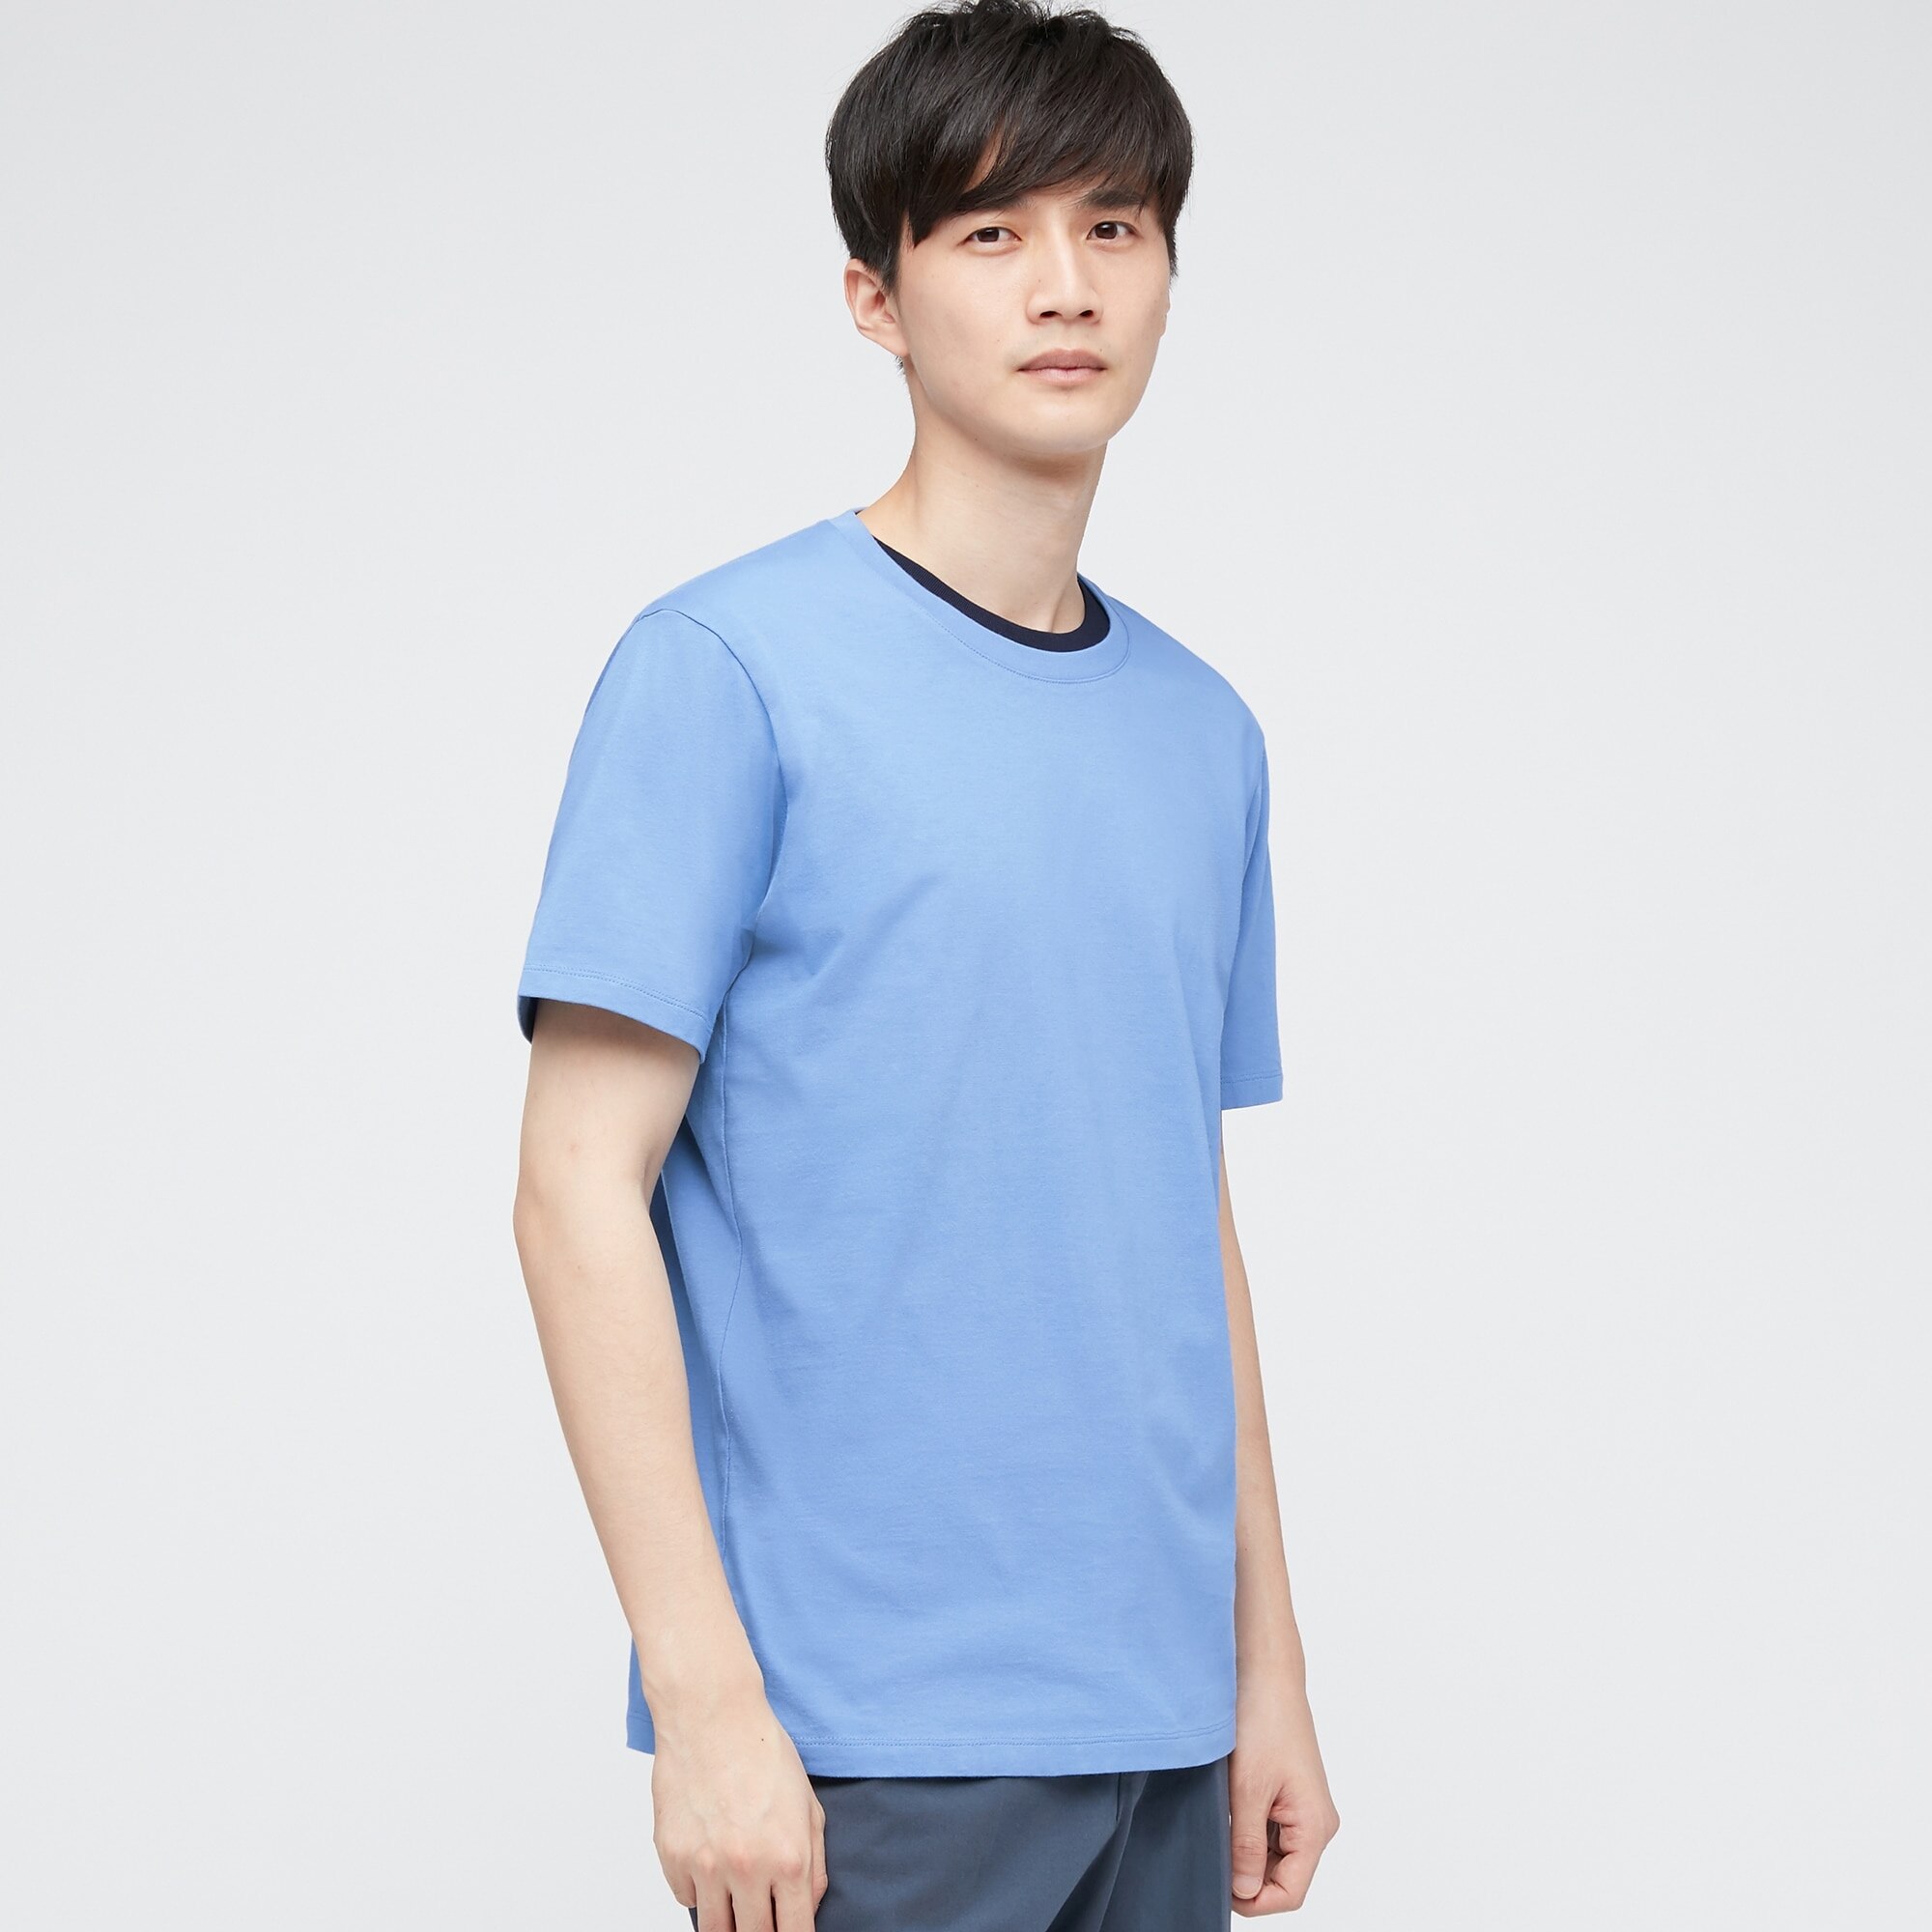 Brand New Uniqlo Supima Cotton Tshirt S Navy Mens Fashion Tops   Sets Tshirts  Polo Shirts on Carousell